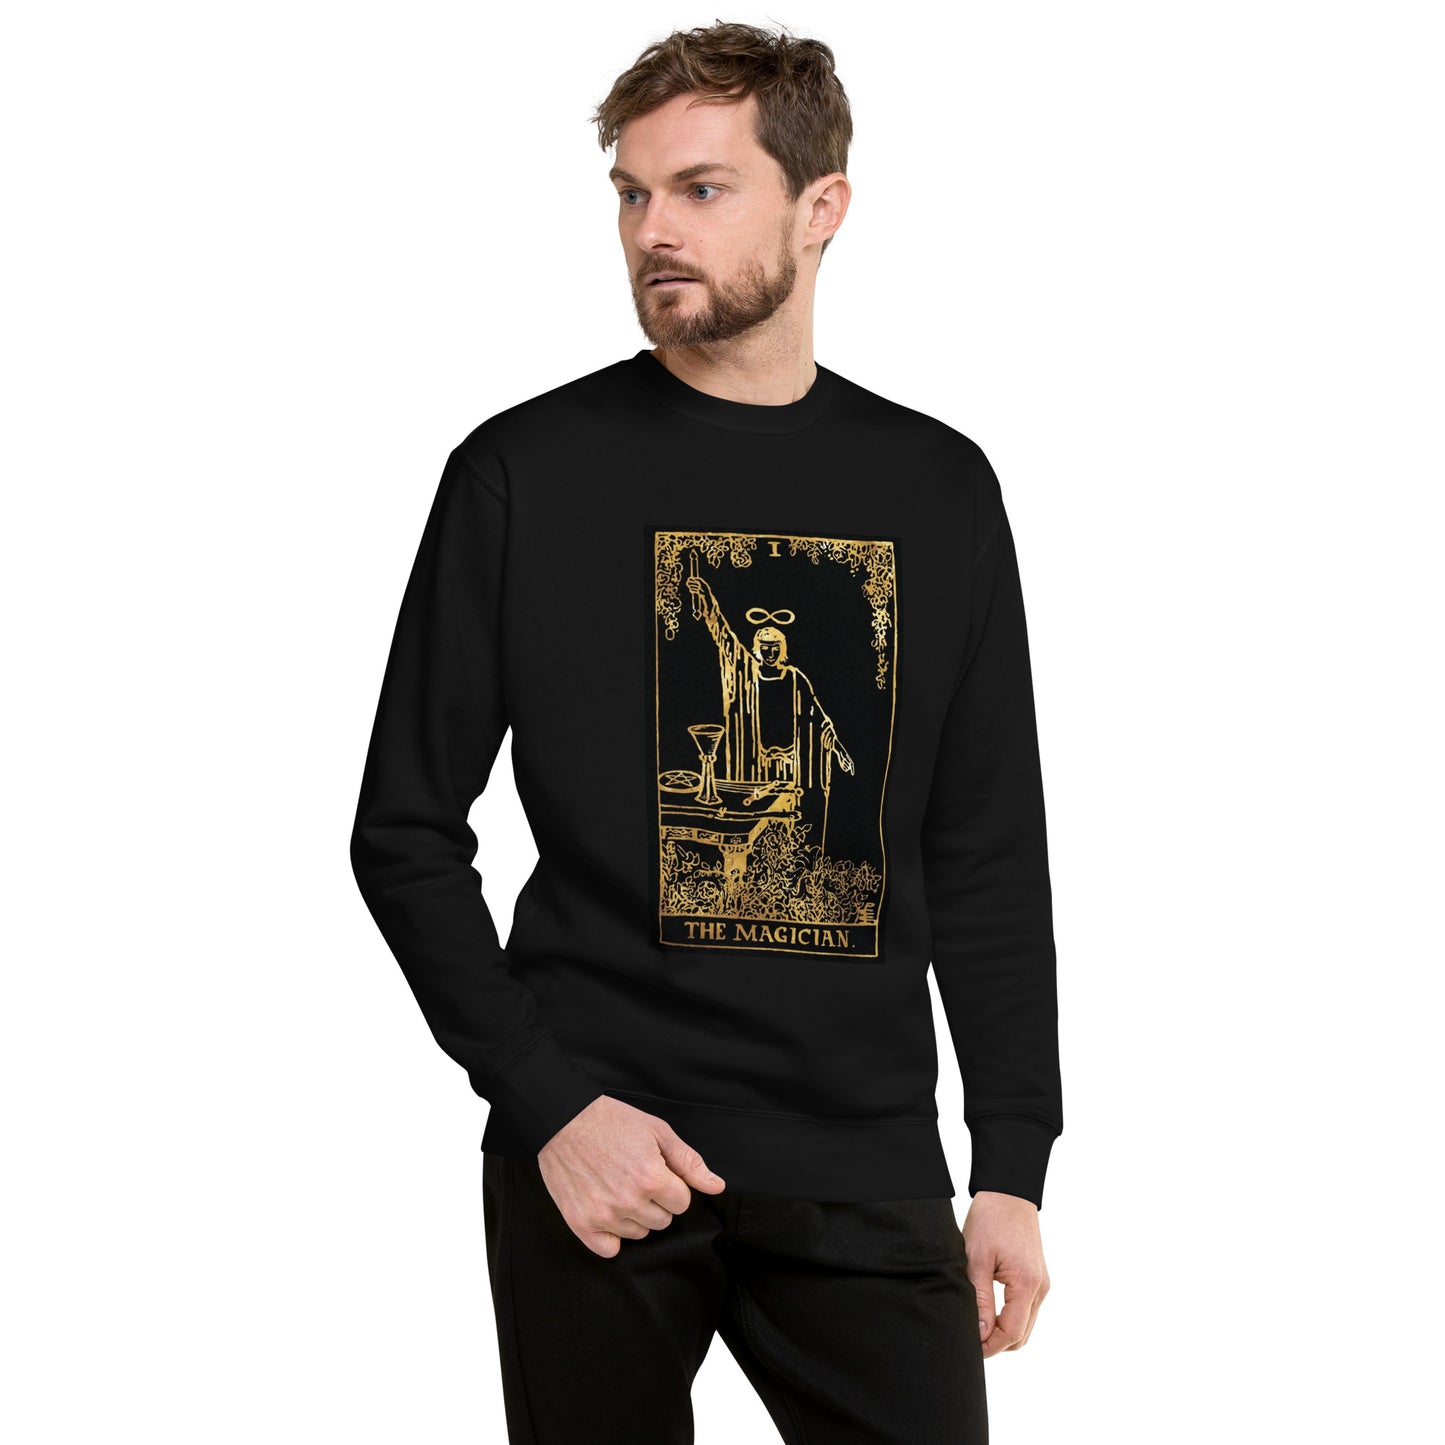 The Magician, Unisex Premium Sweatshirt